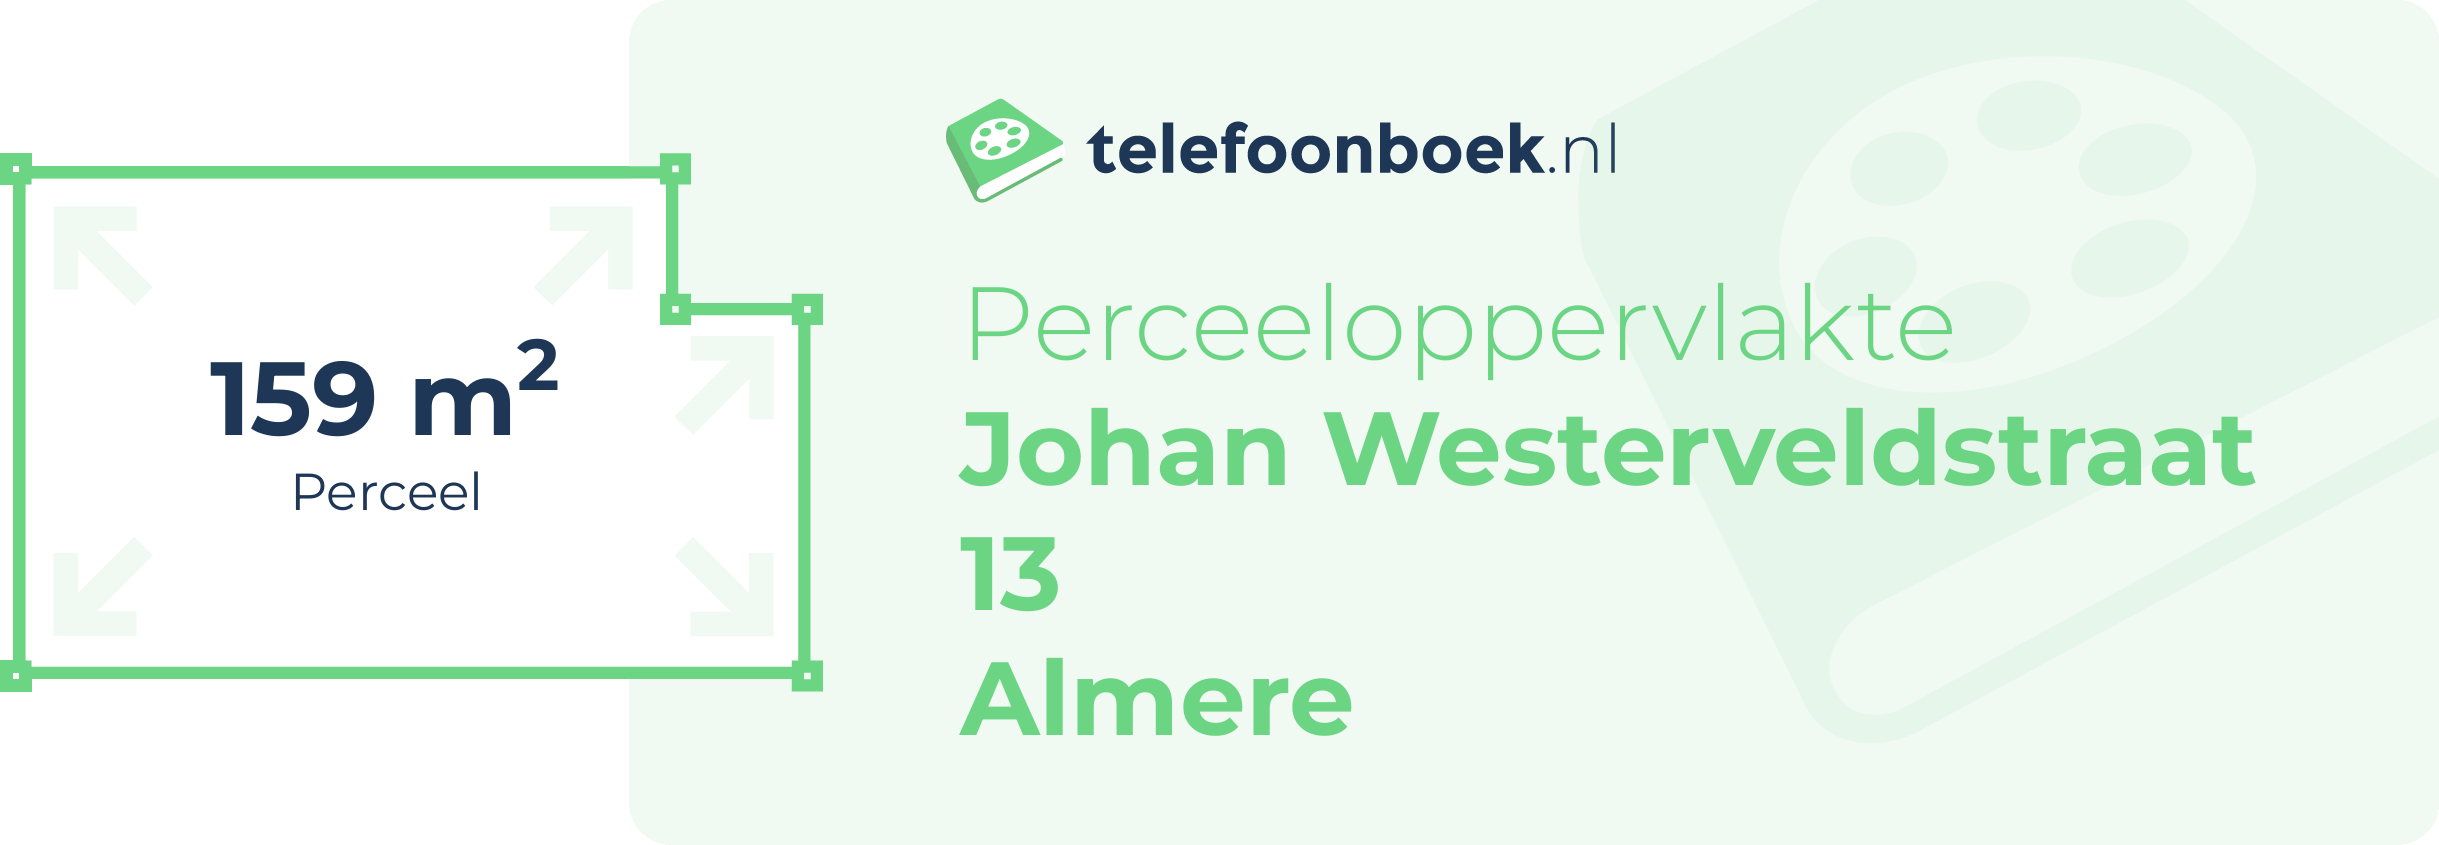 Perceeloppervlakte Johan Westerveldstraat 13 Almere